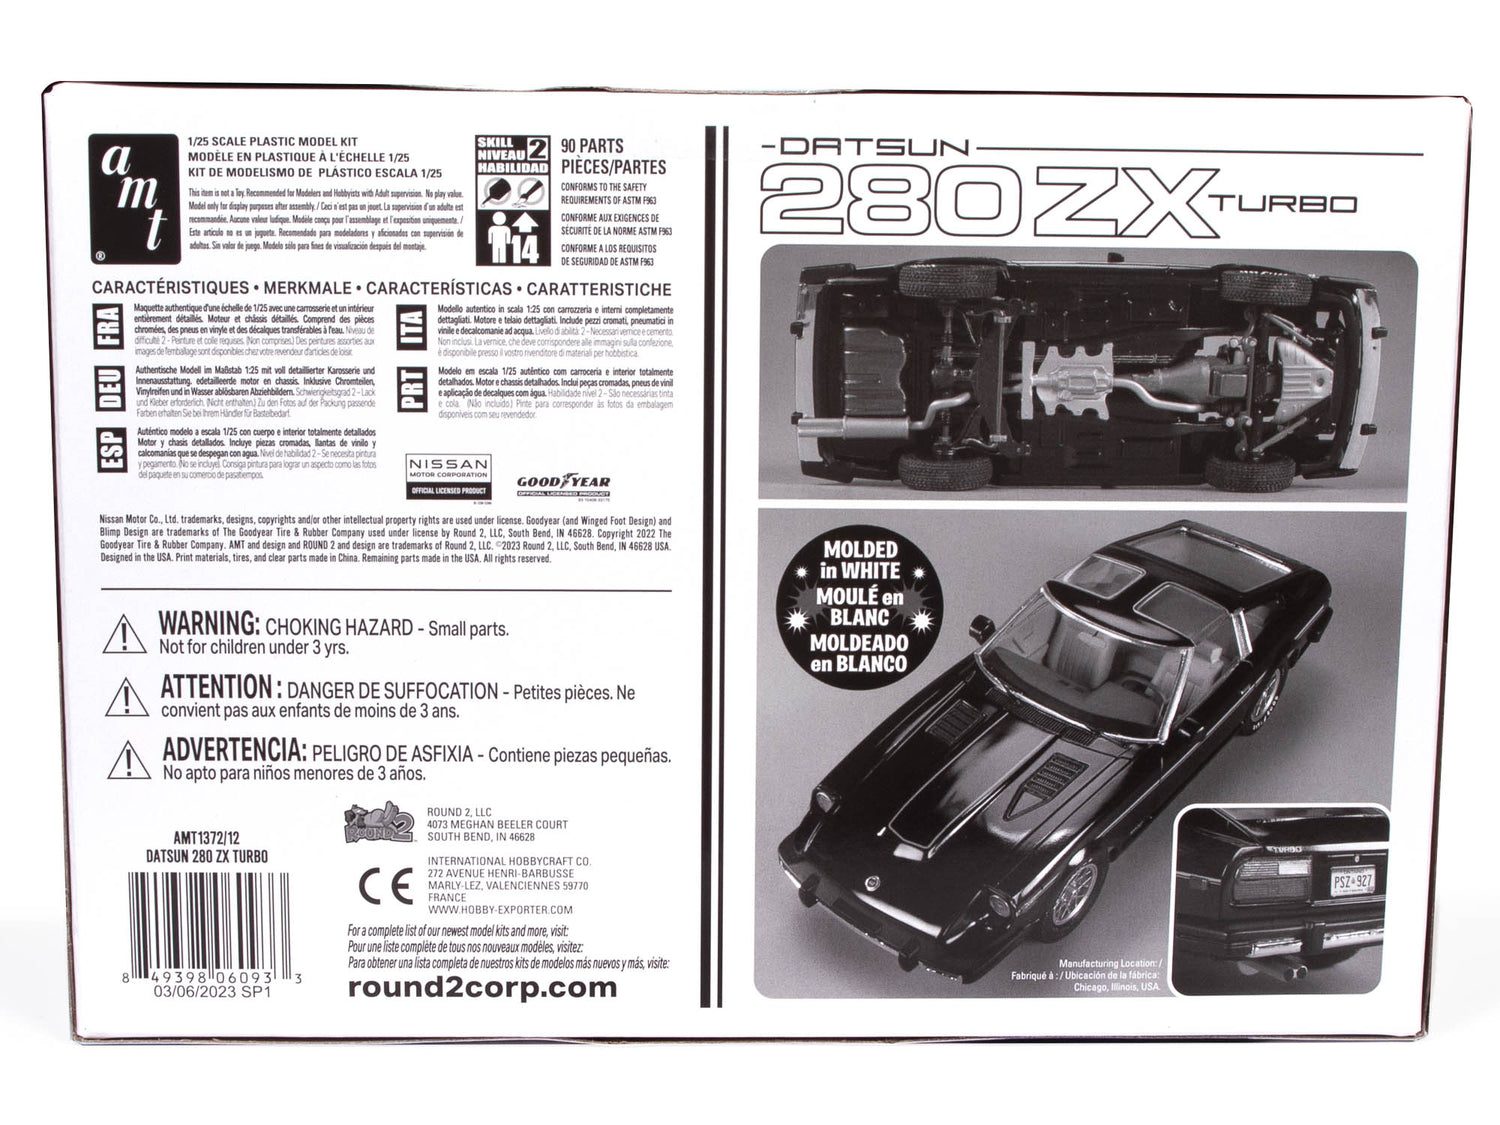 AMT 1981 Datsun 280 ZX Turbo 1:25 Scale Model Kit